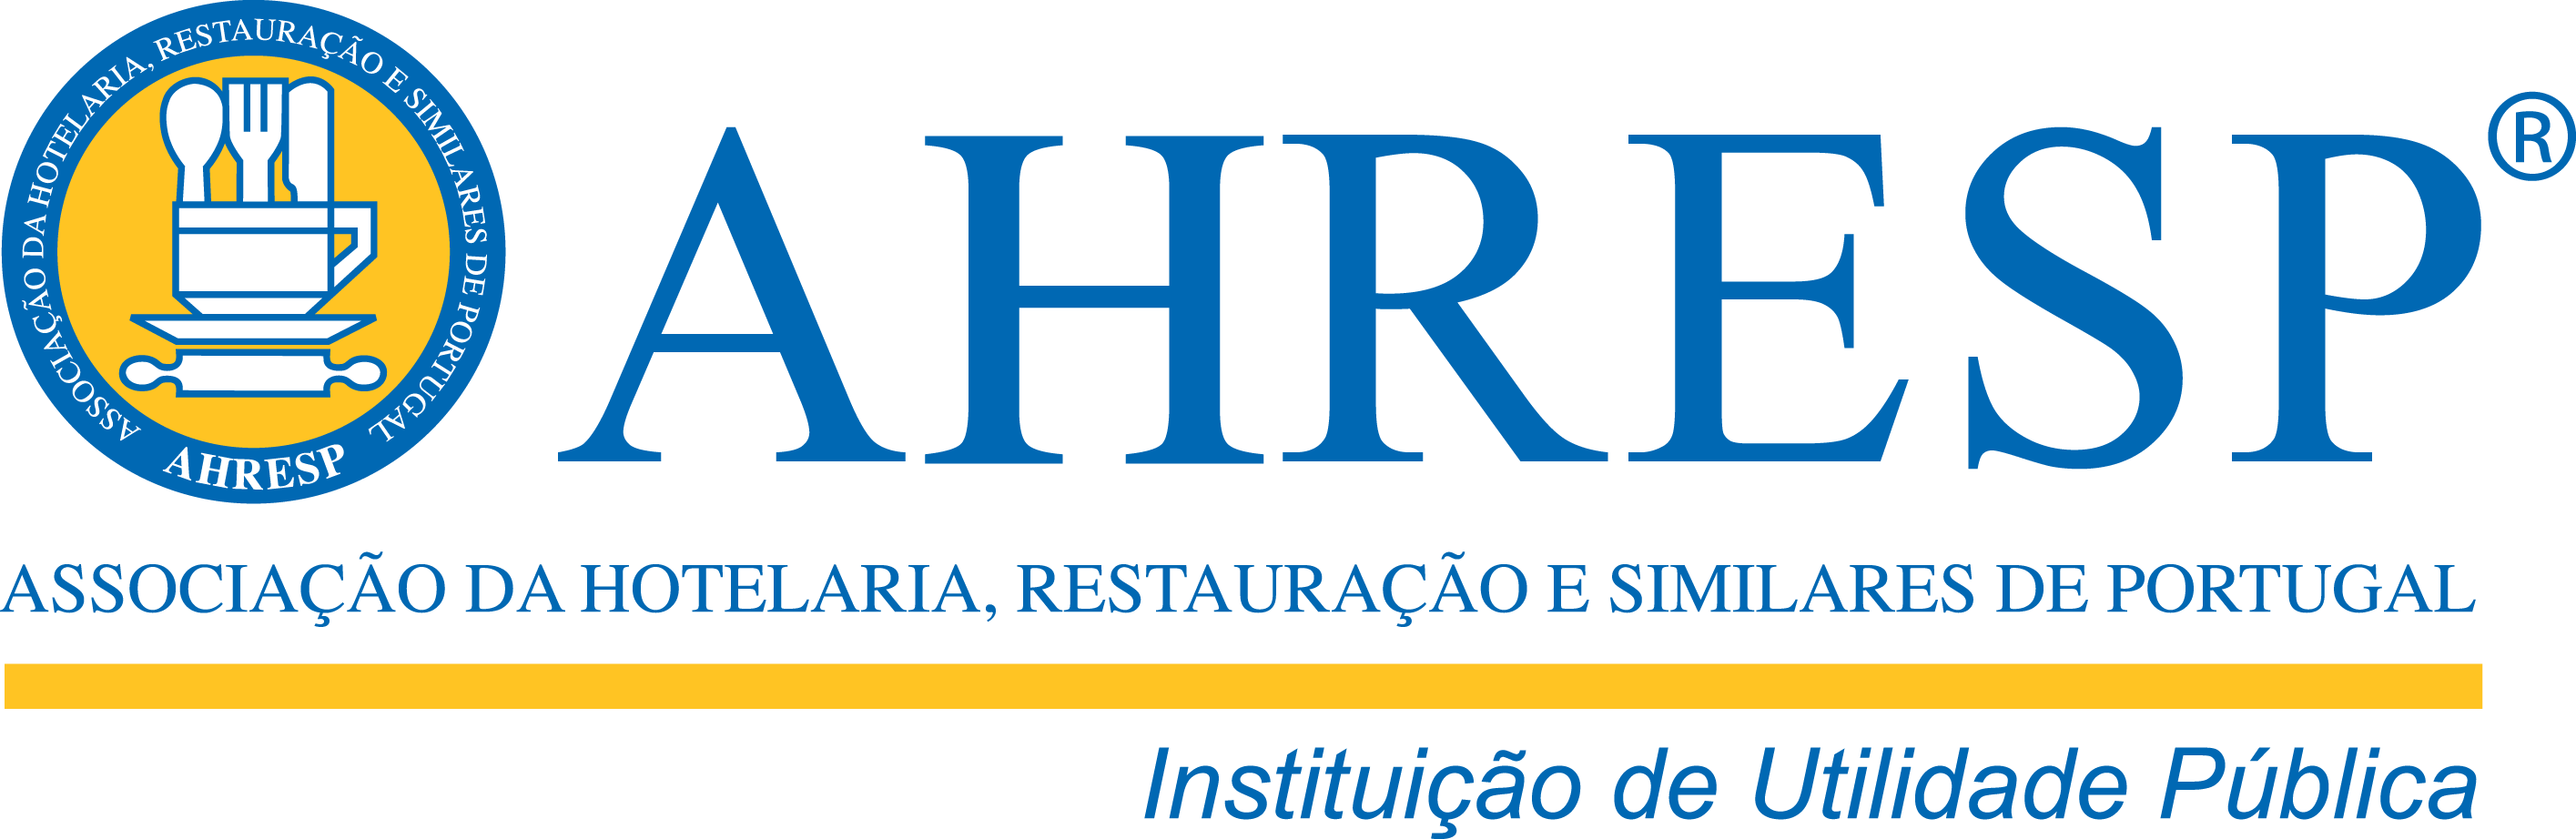 AHRESP -Associação da Hotelaria, Restauração e Similares de Portugal